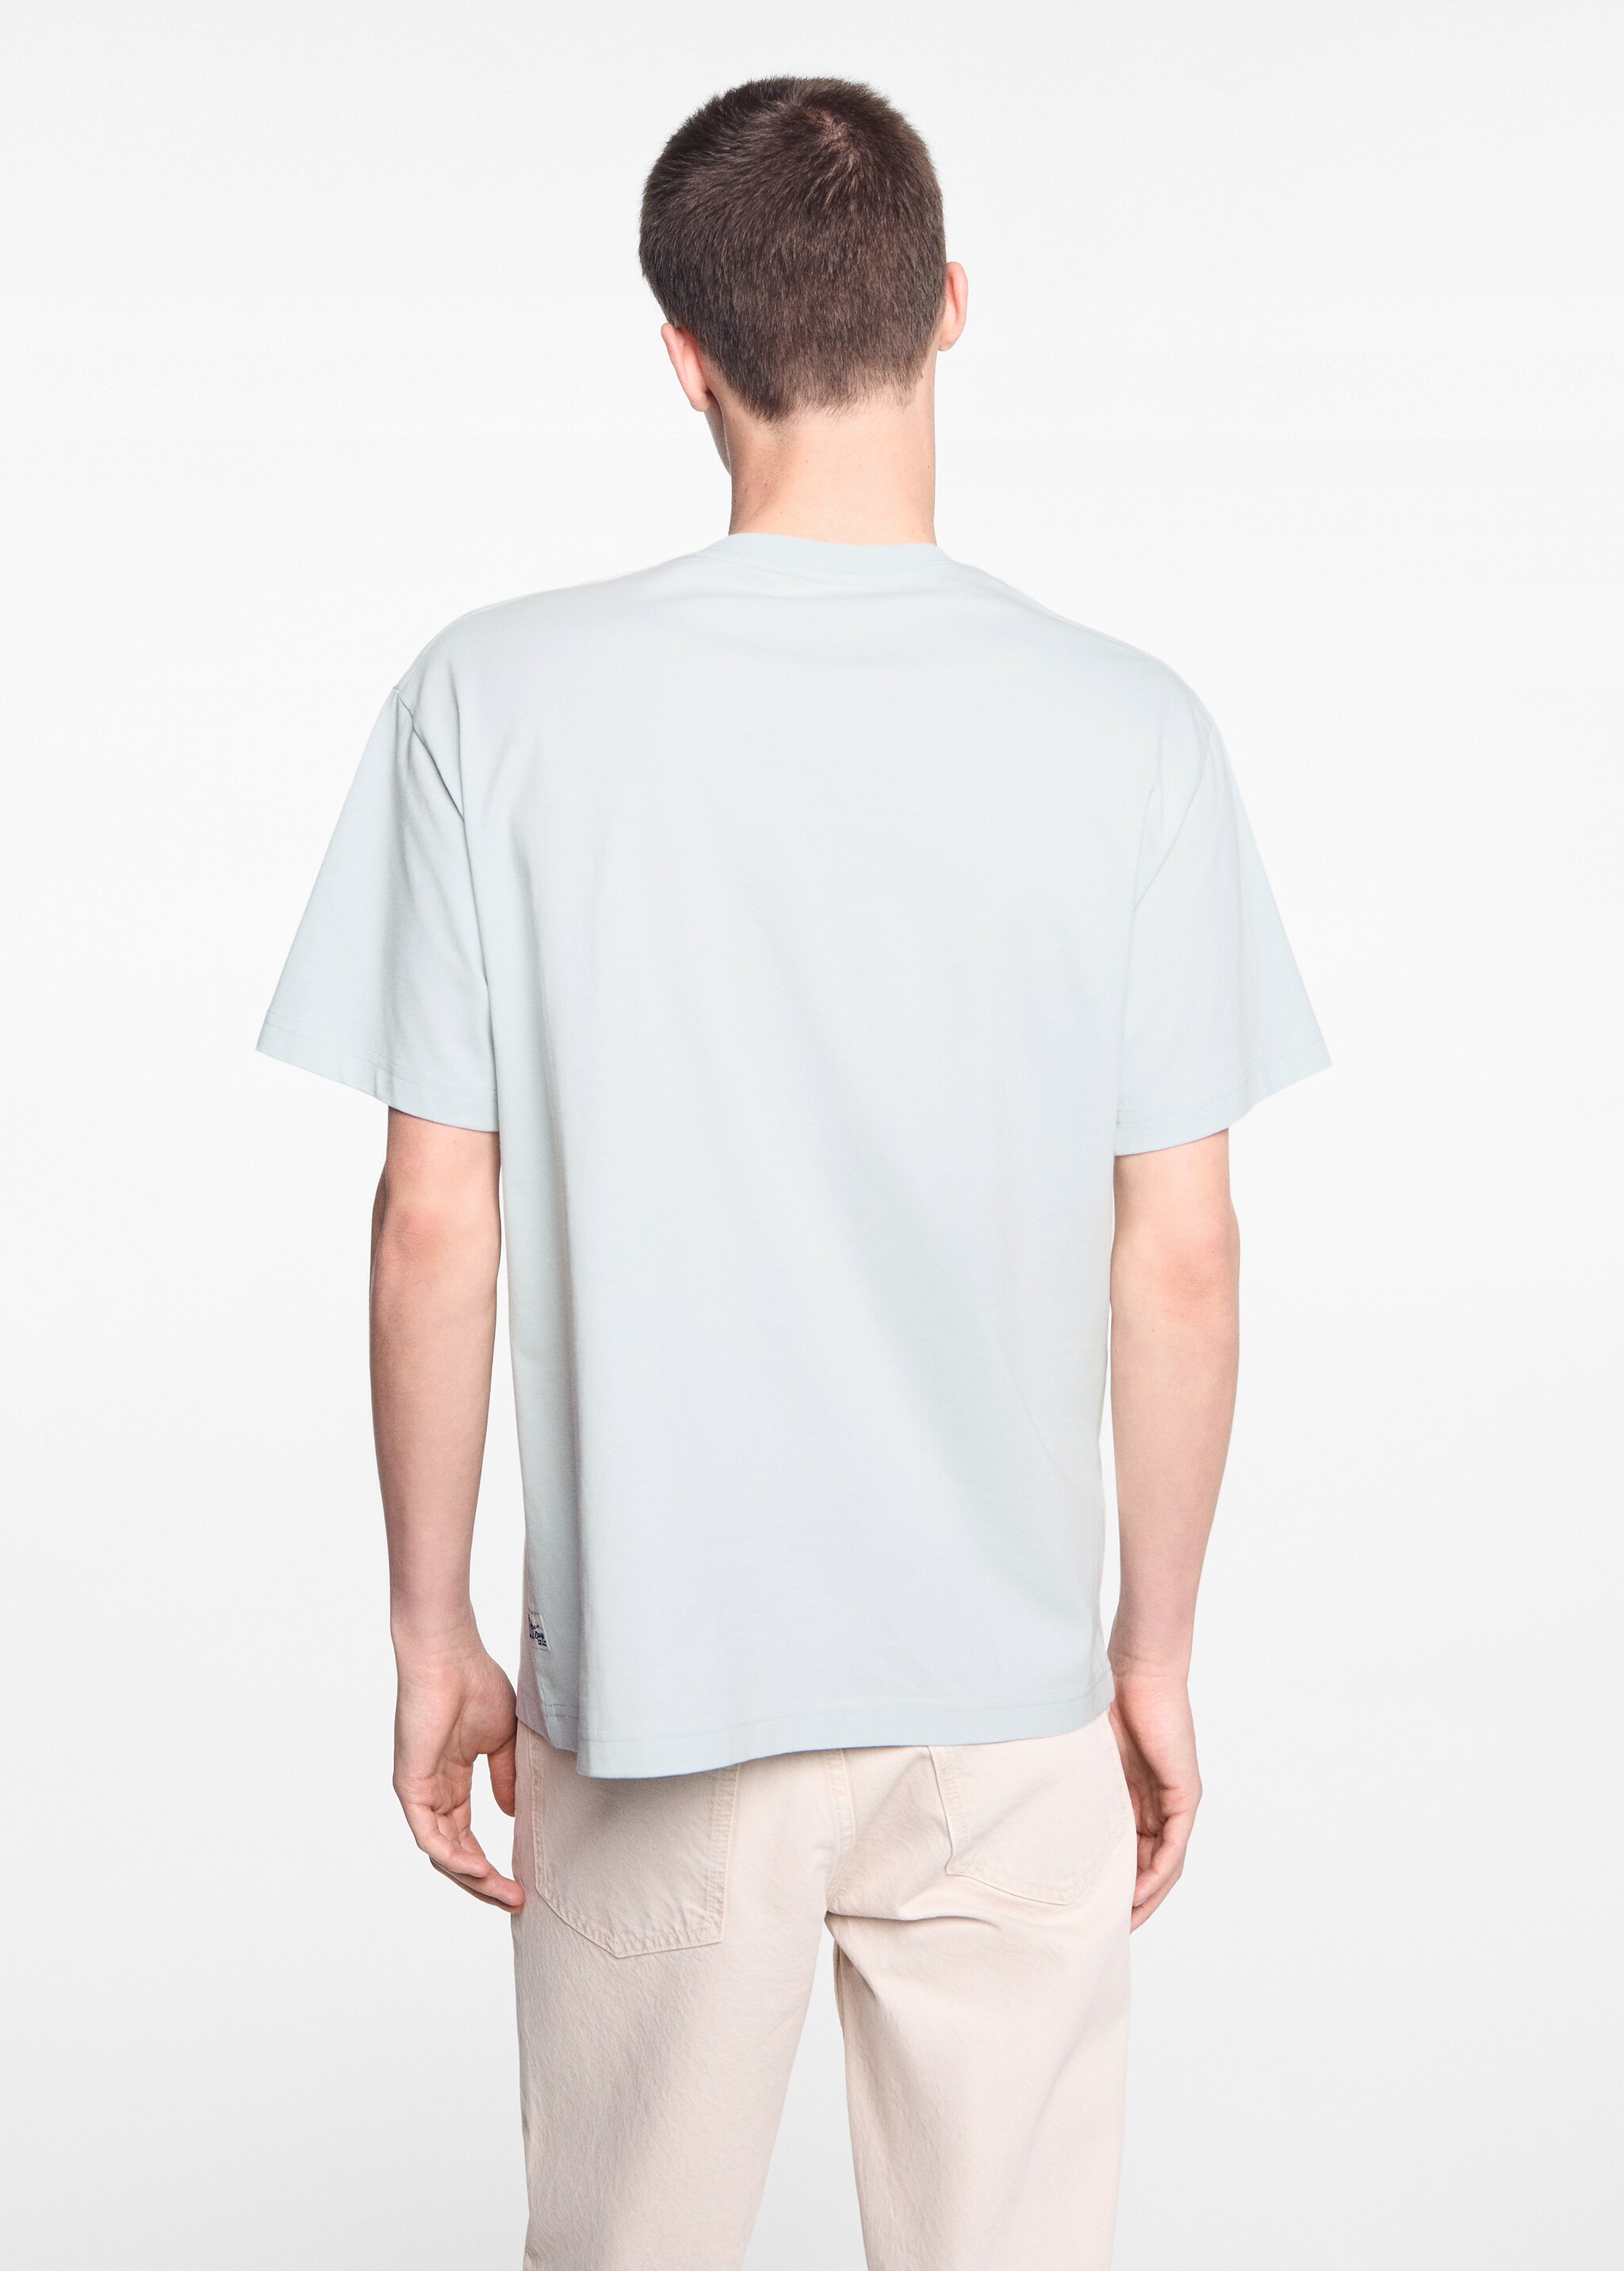 Camiseta algodón mensaje bordado - Reverso del artículo